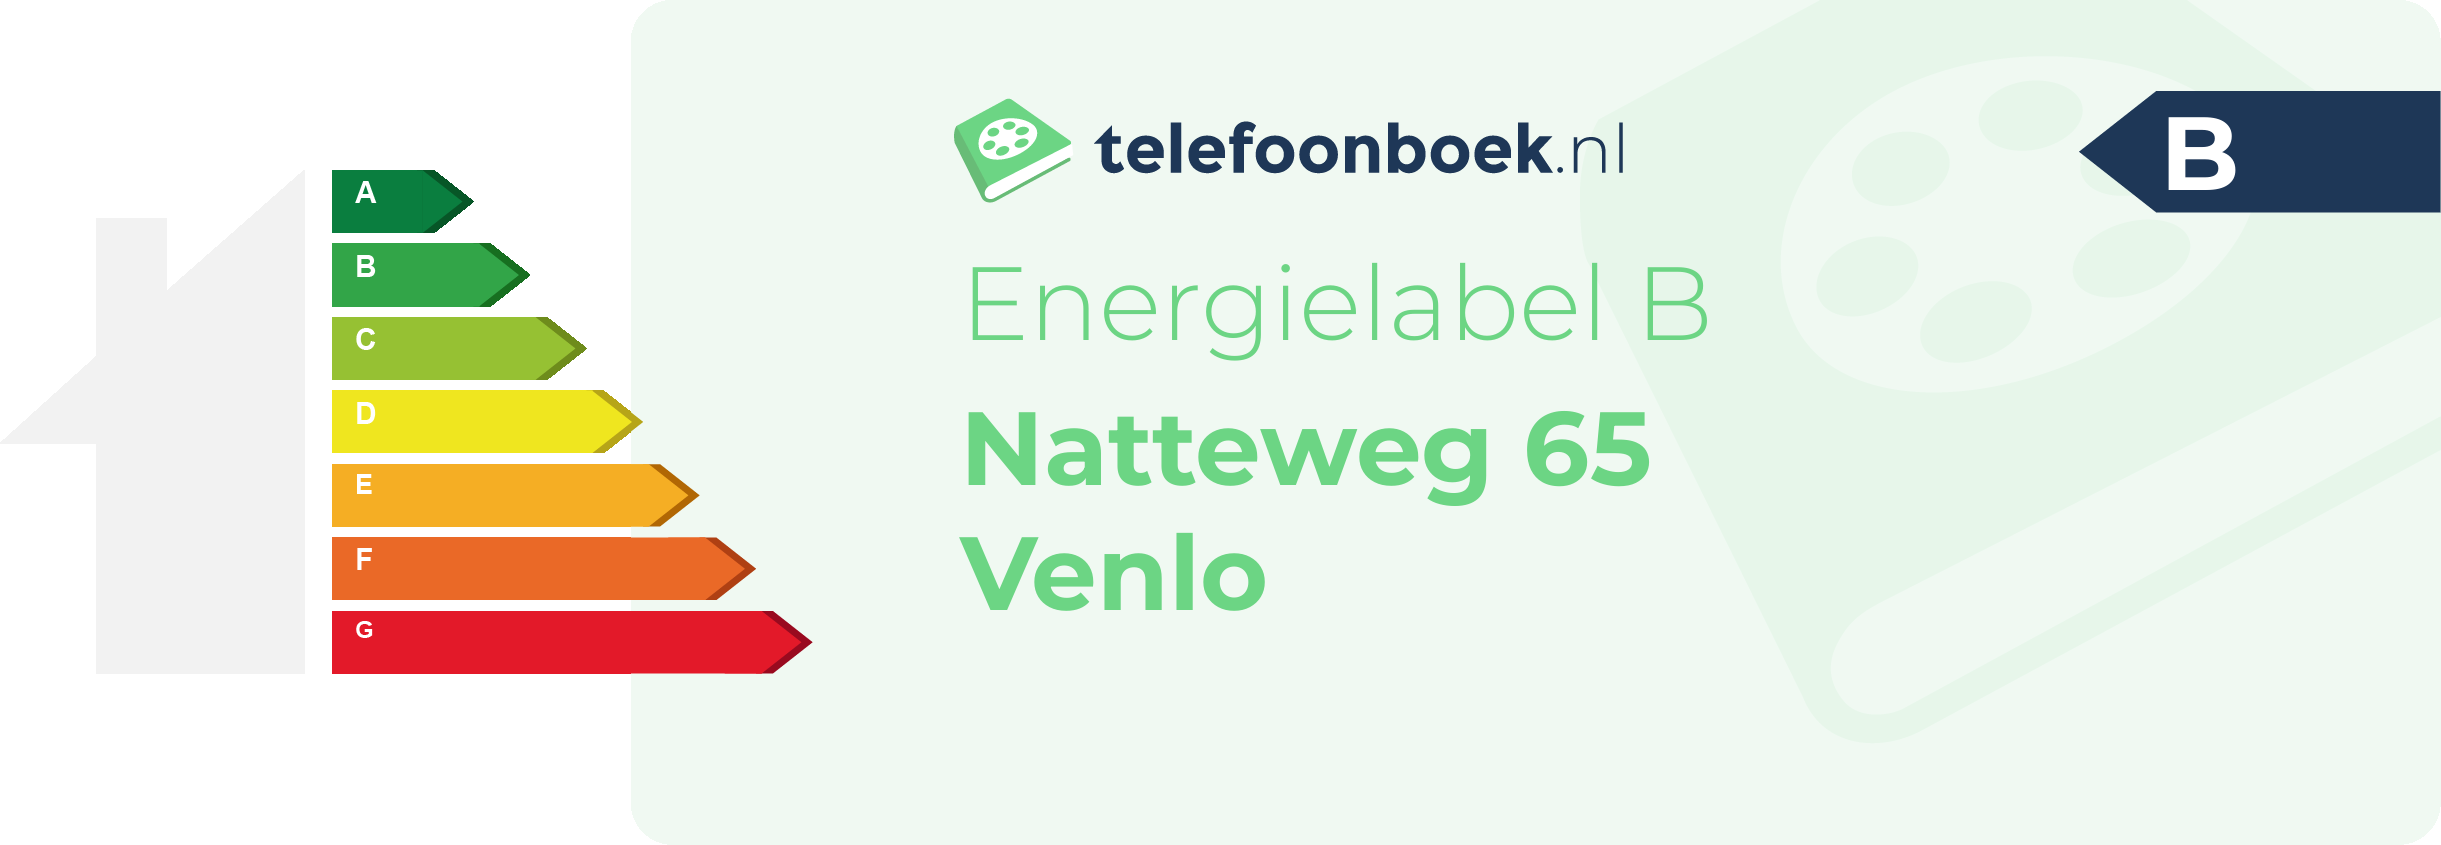 Energielabel Natteweg 65 Venlo